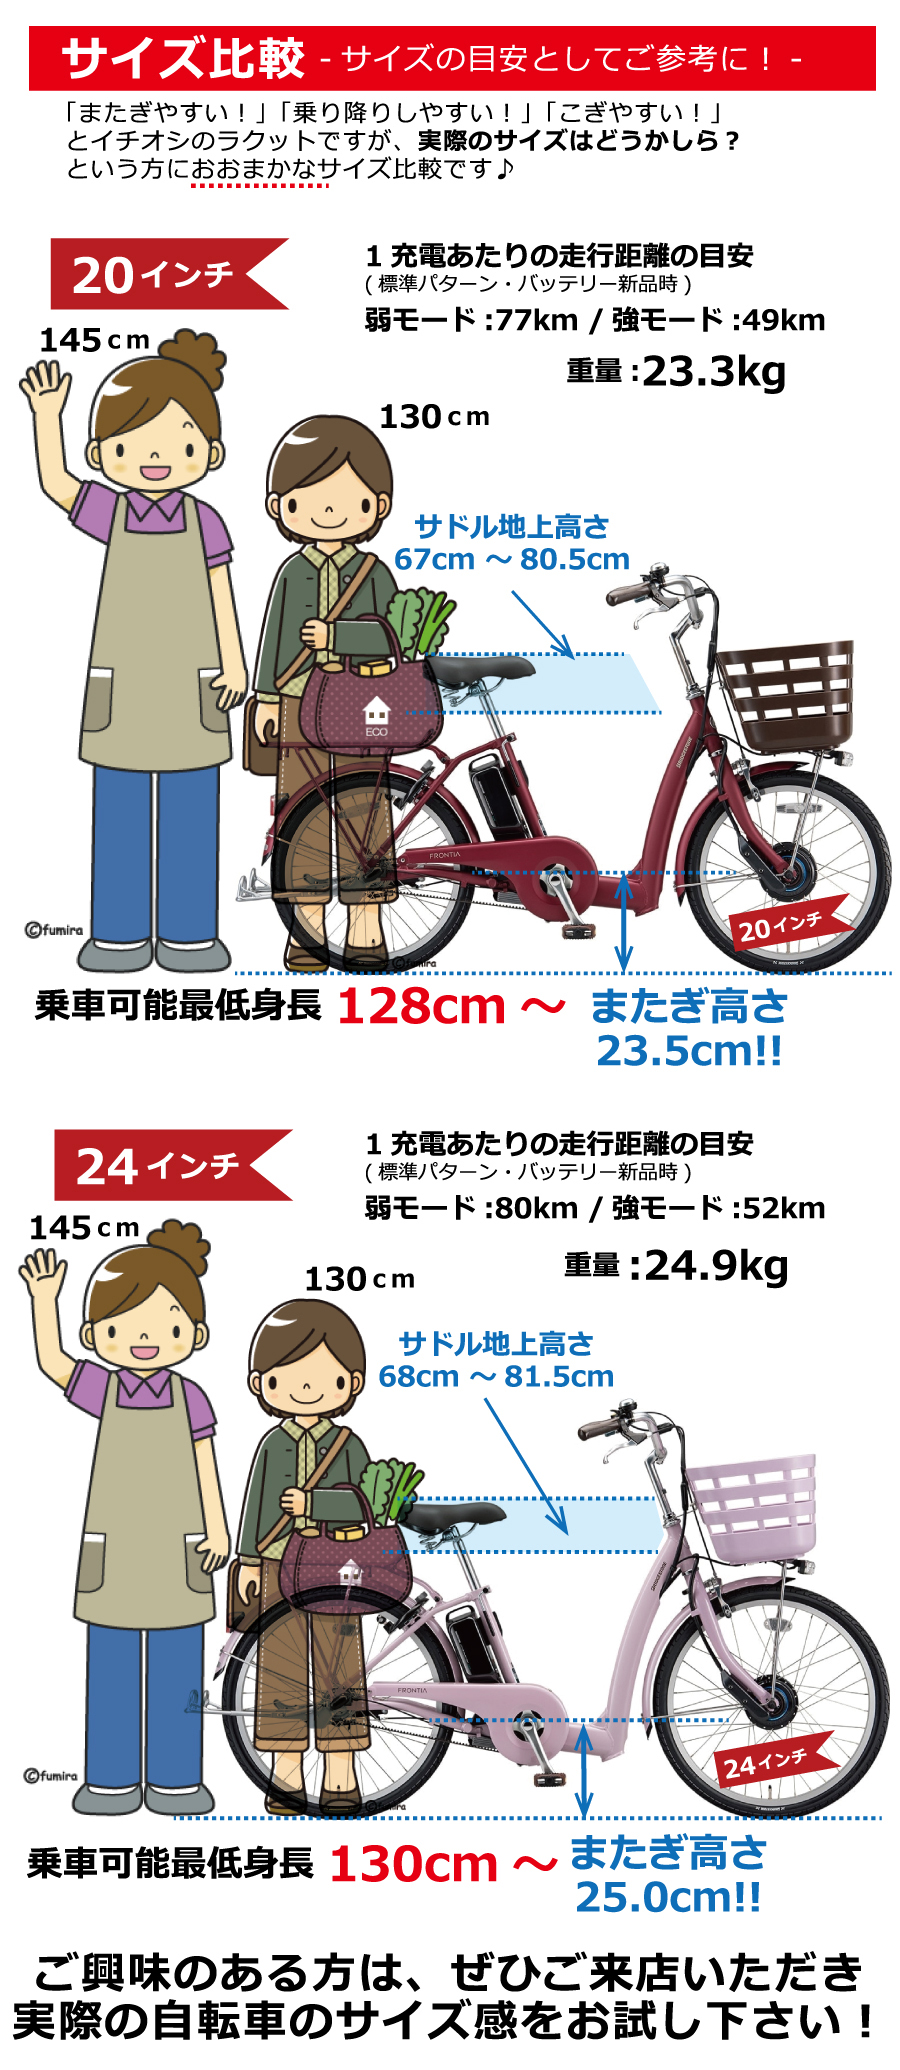 サイクルショップさかさい_電動アシスト自転車について